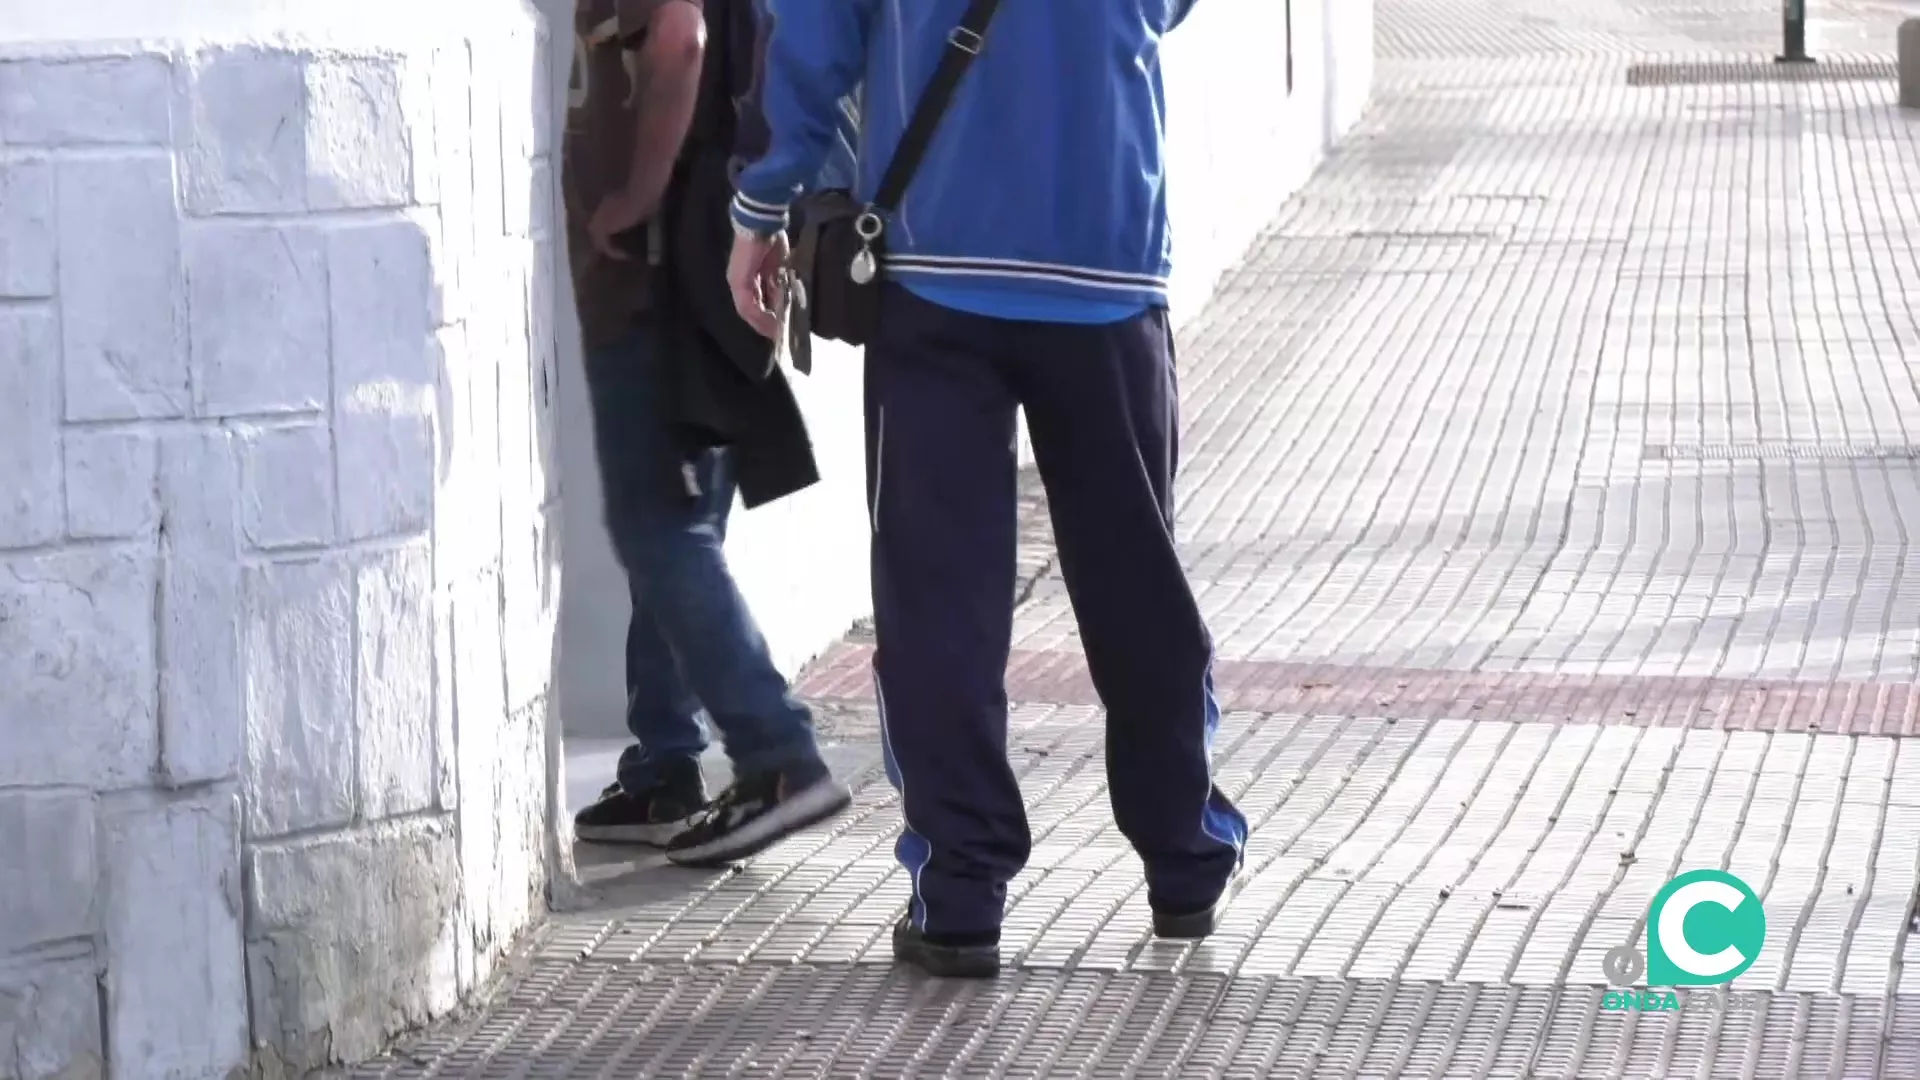 Personas sin hogar acceden al centro municipal Fermín Salvochea